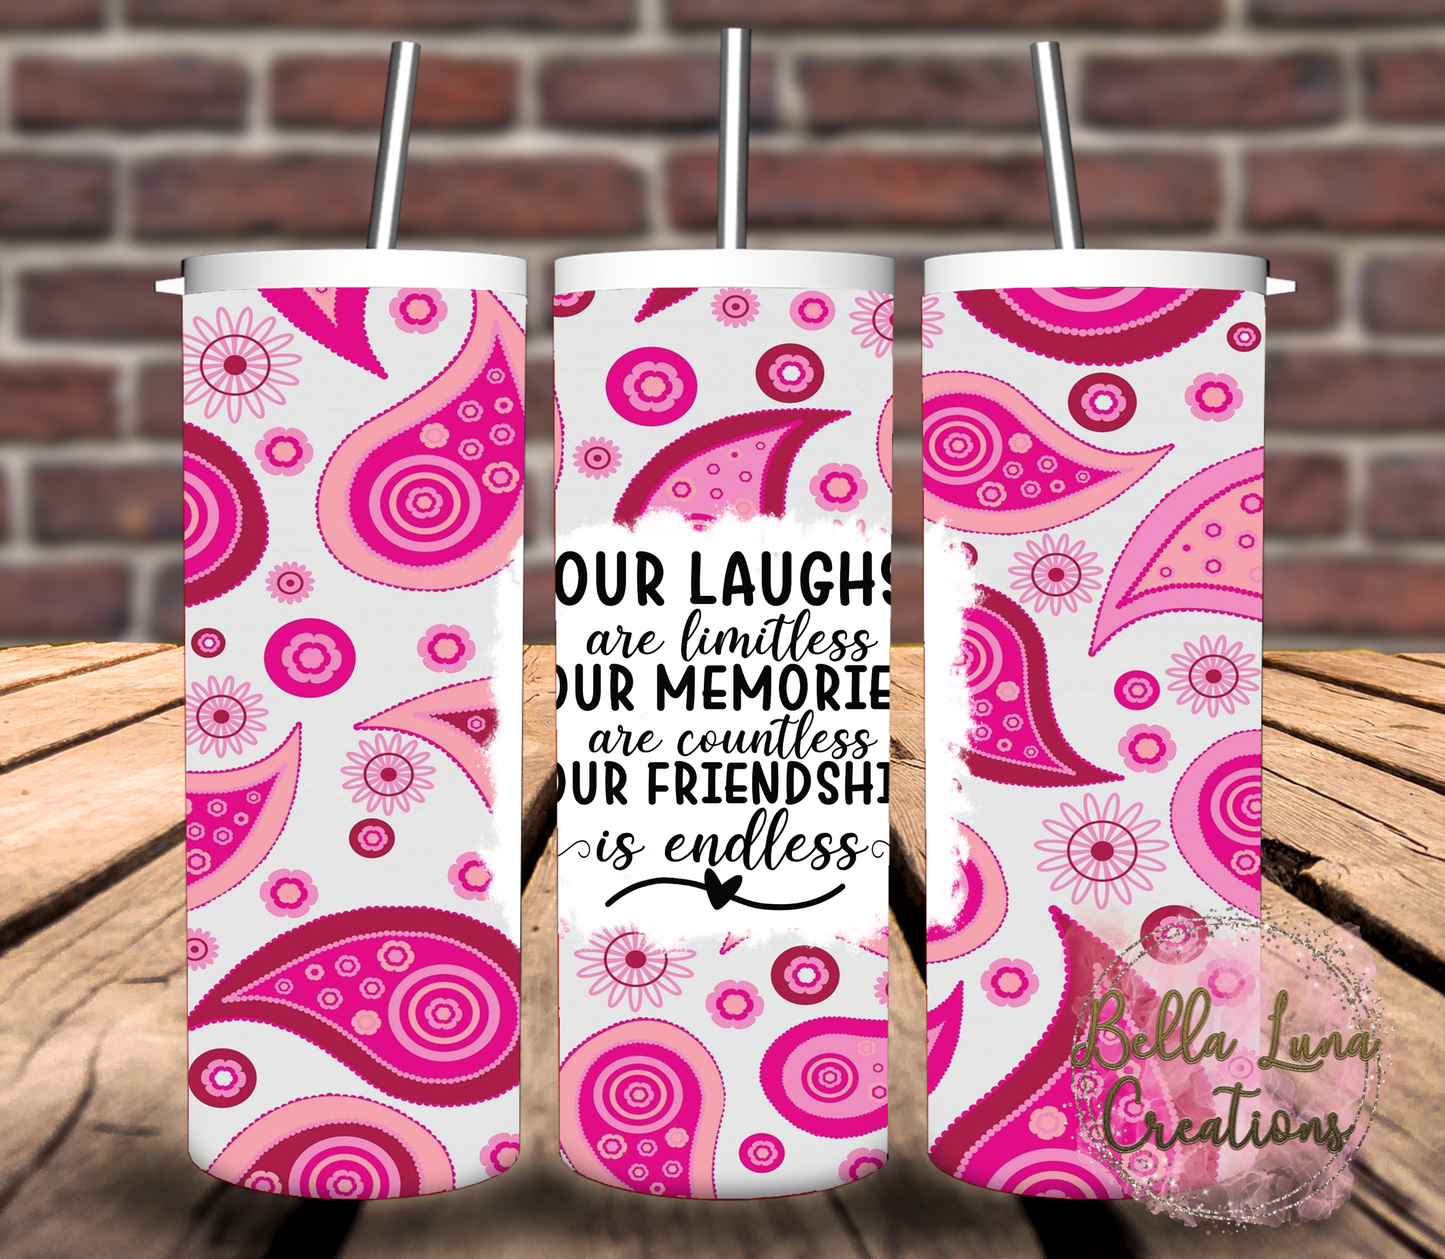 Friendship Digital Design for Tumbler Wrap - Bundle of 5 images